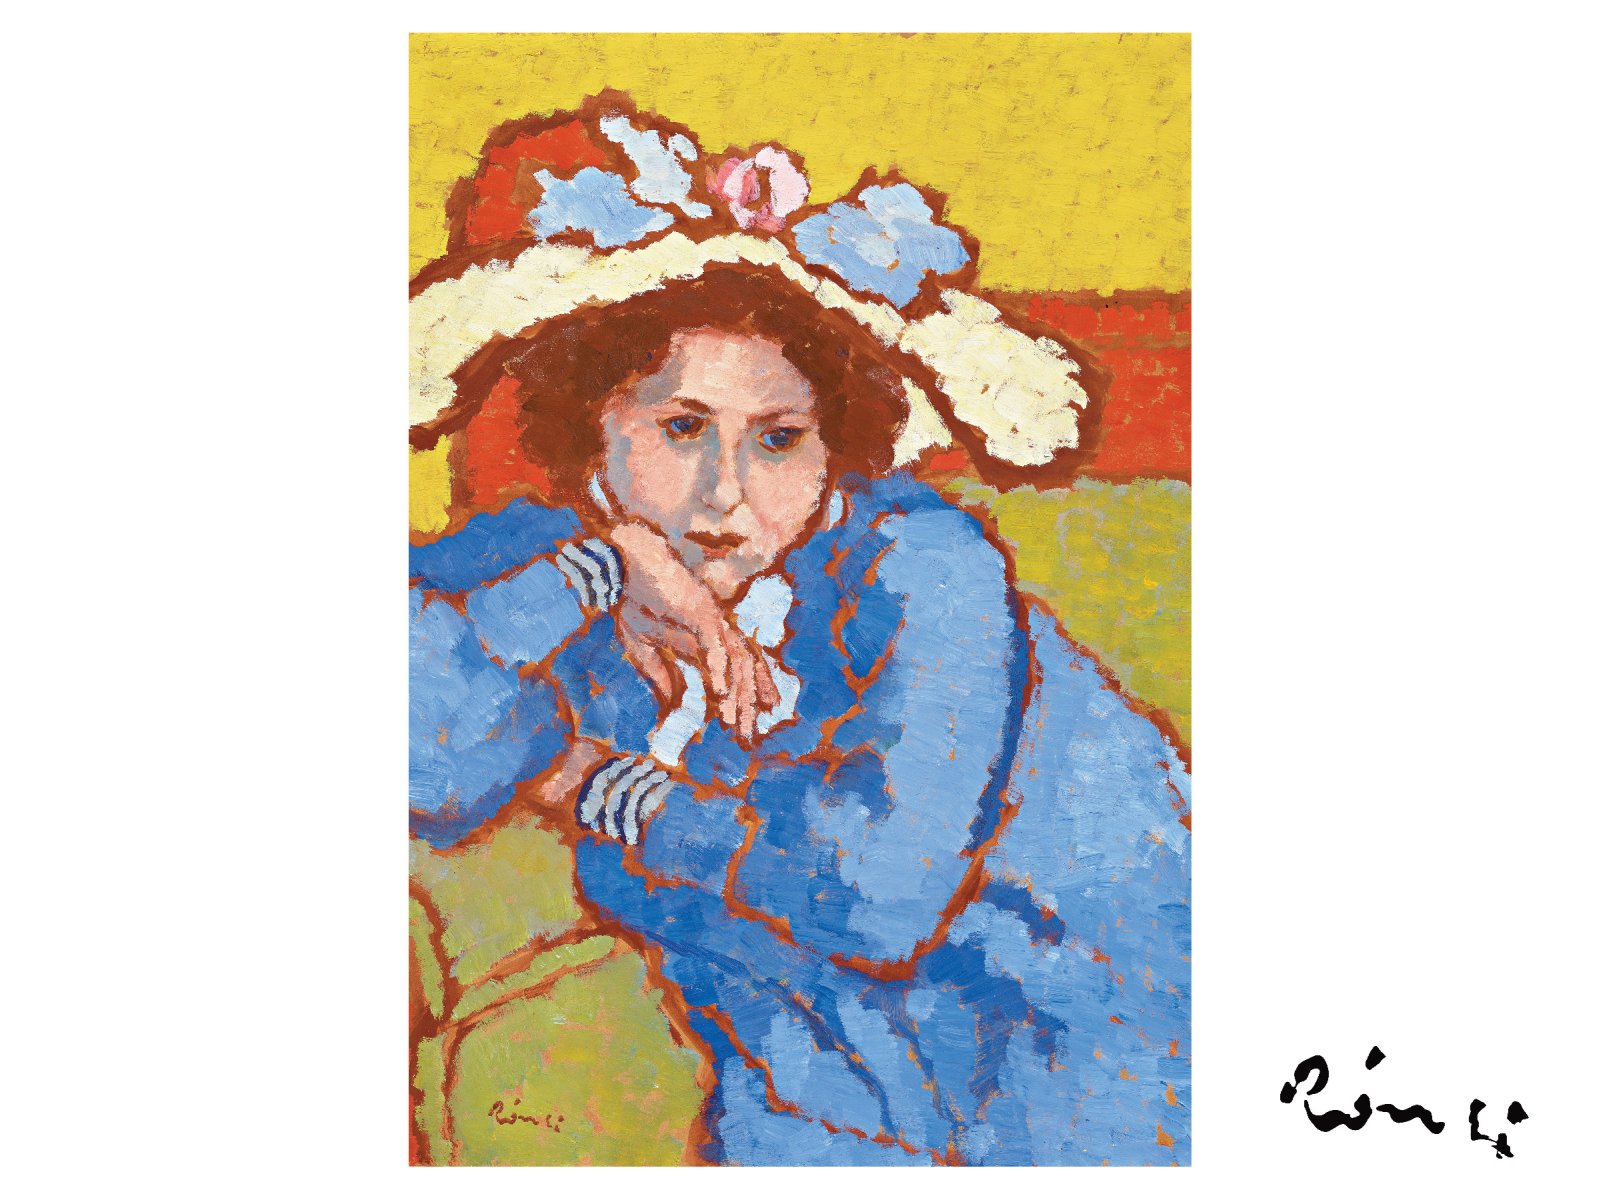 75,6 millió forintért kelt el Rippl-Rónai József Kékruhás lány virágos kalapban című festménye a BÁV őszi aukcióján